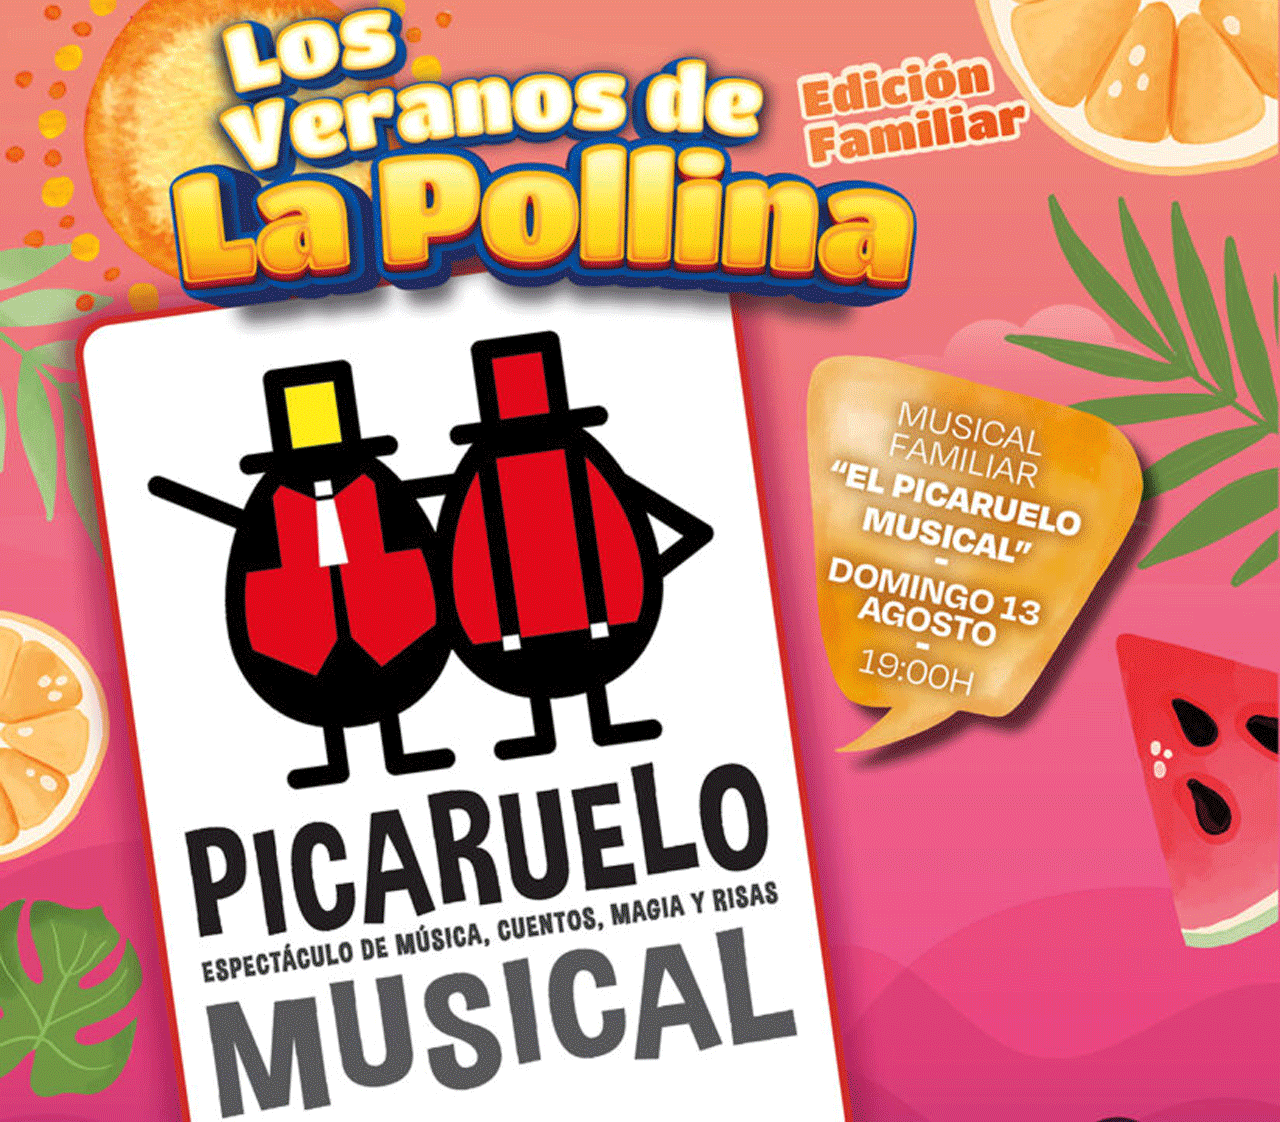 Cartel del espectáculo 'Picaruelo Musical' que se celebrará en La Pollina de Fuenlabrada